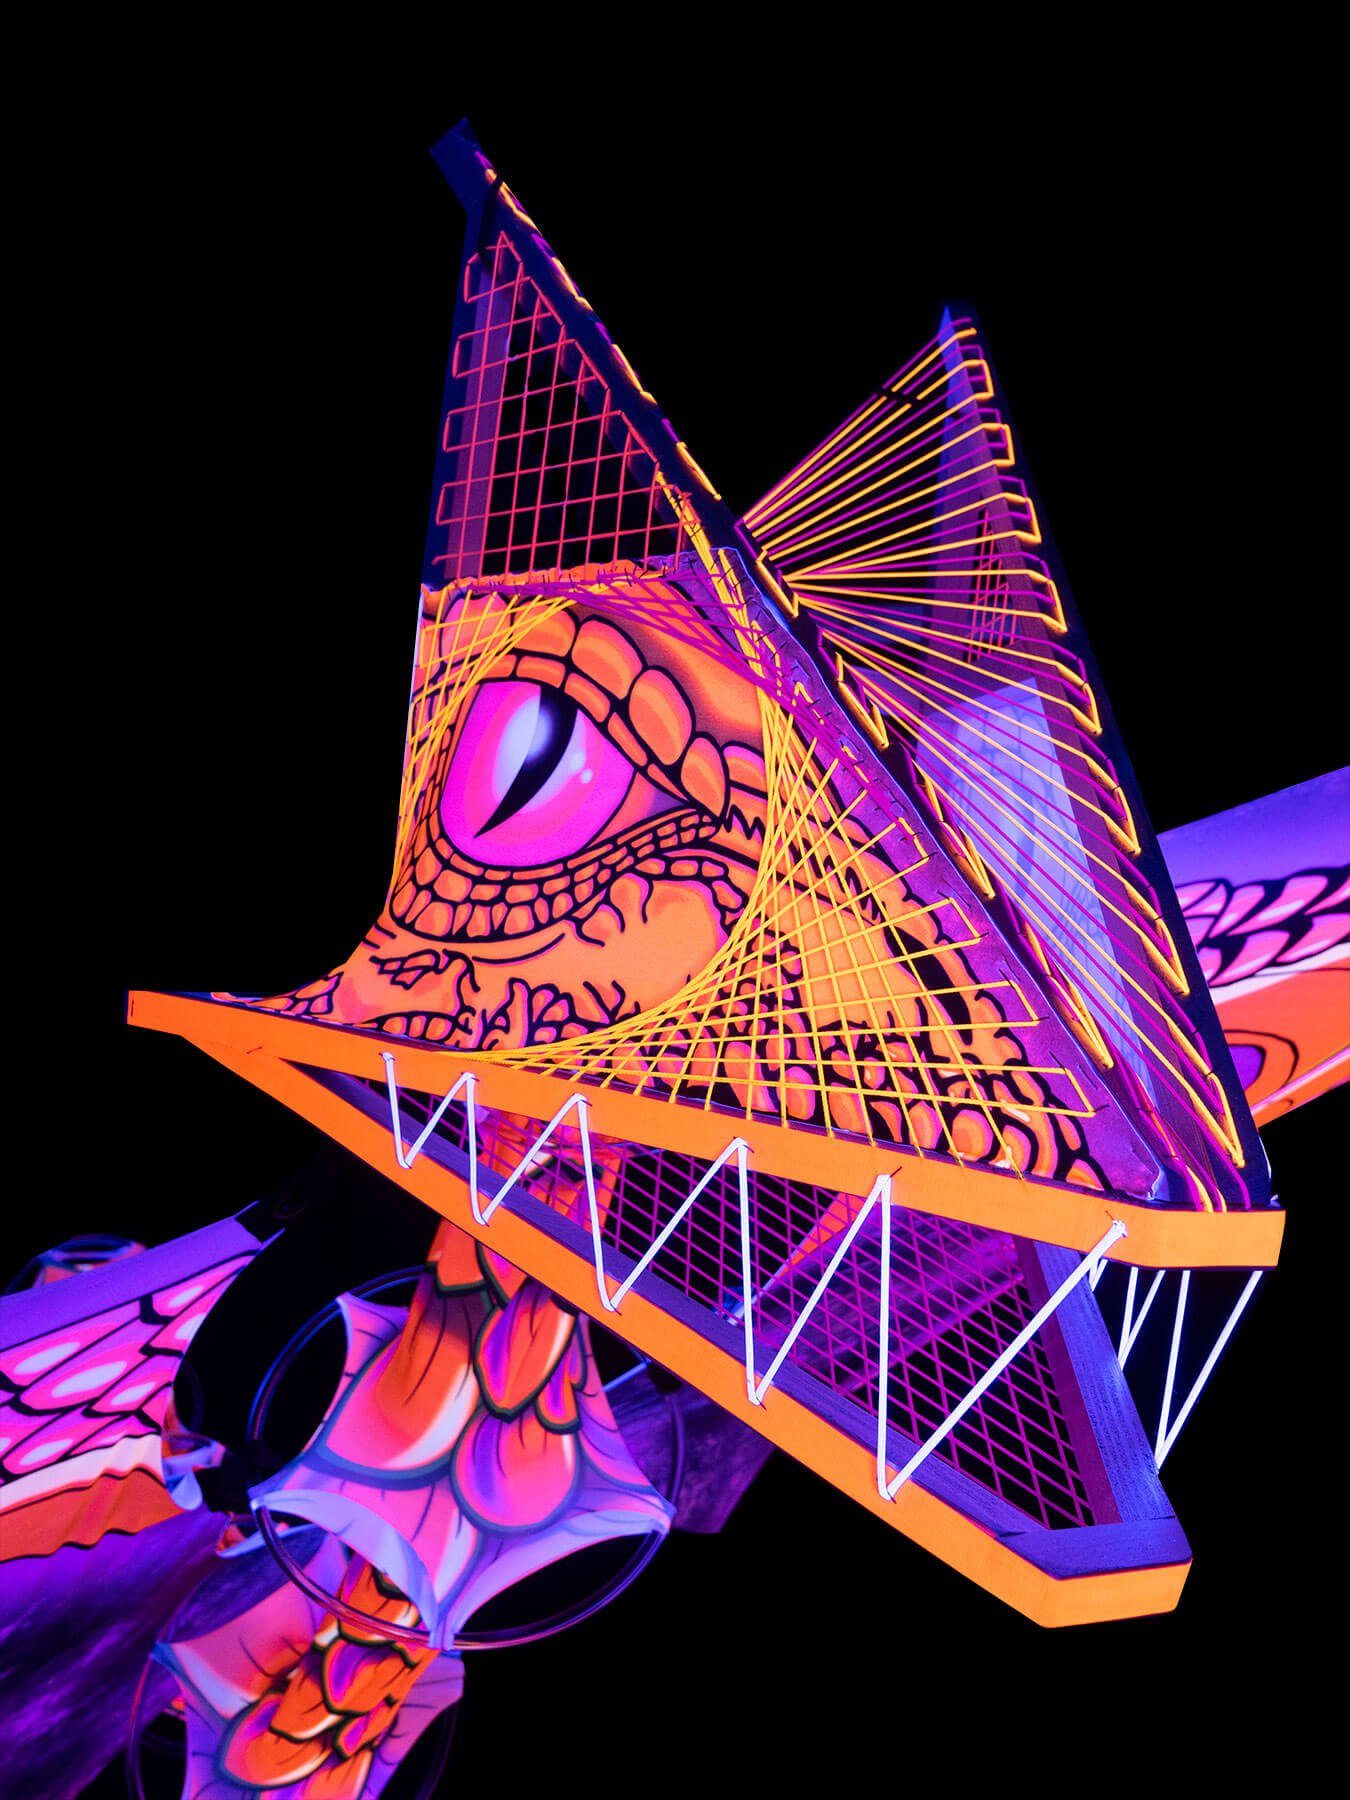 PSYWORK Dekoobjekt Schwarzlicht Flügel 6m, Temple Schwarzlicht Spandex Drache leuchtet "Dragon UV-aktiv, unter StringArt Orange"